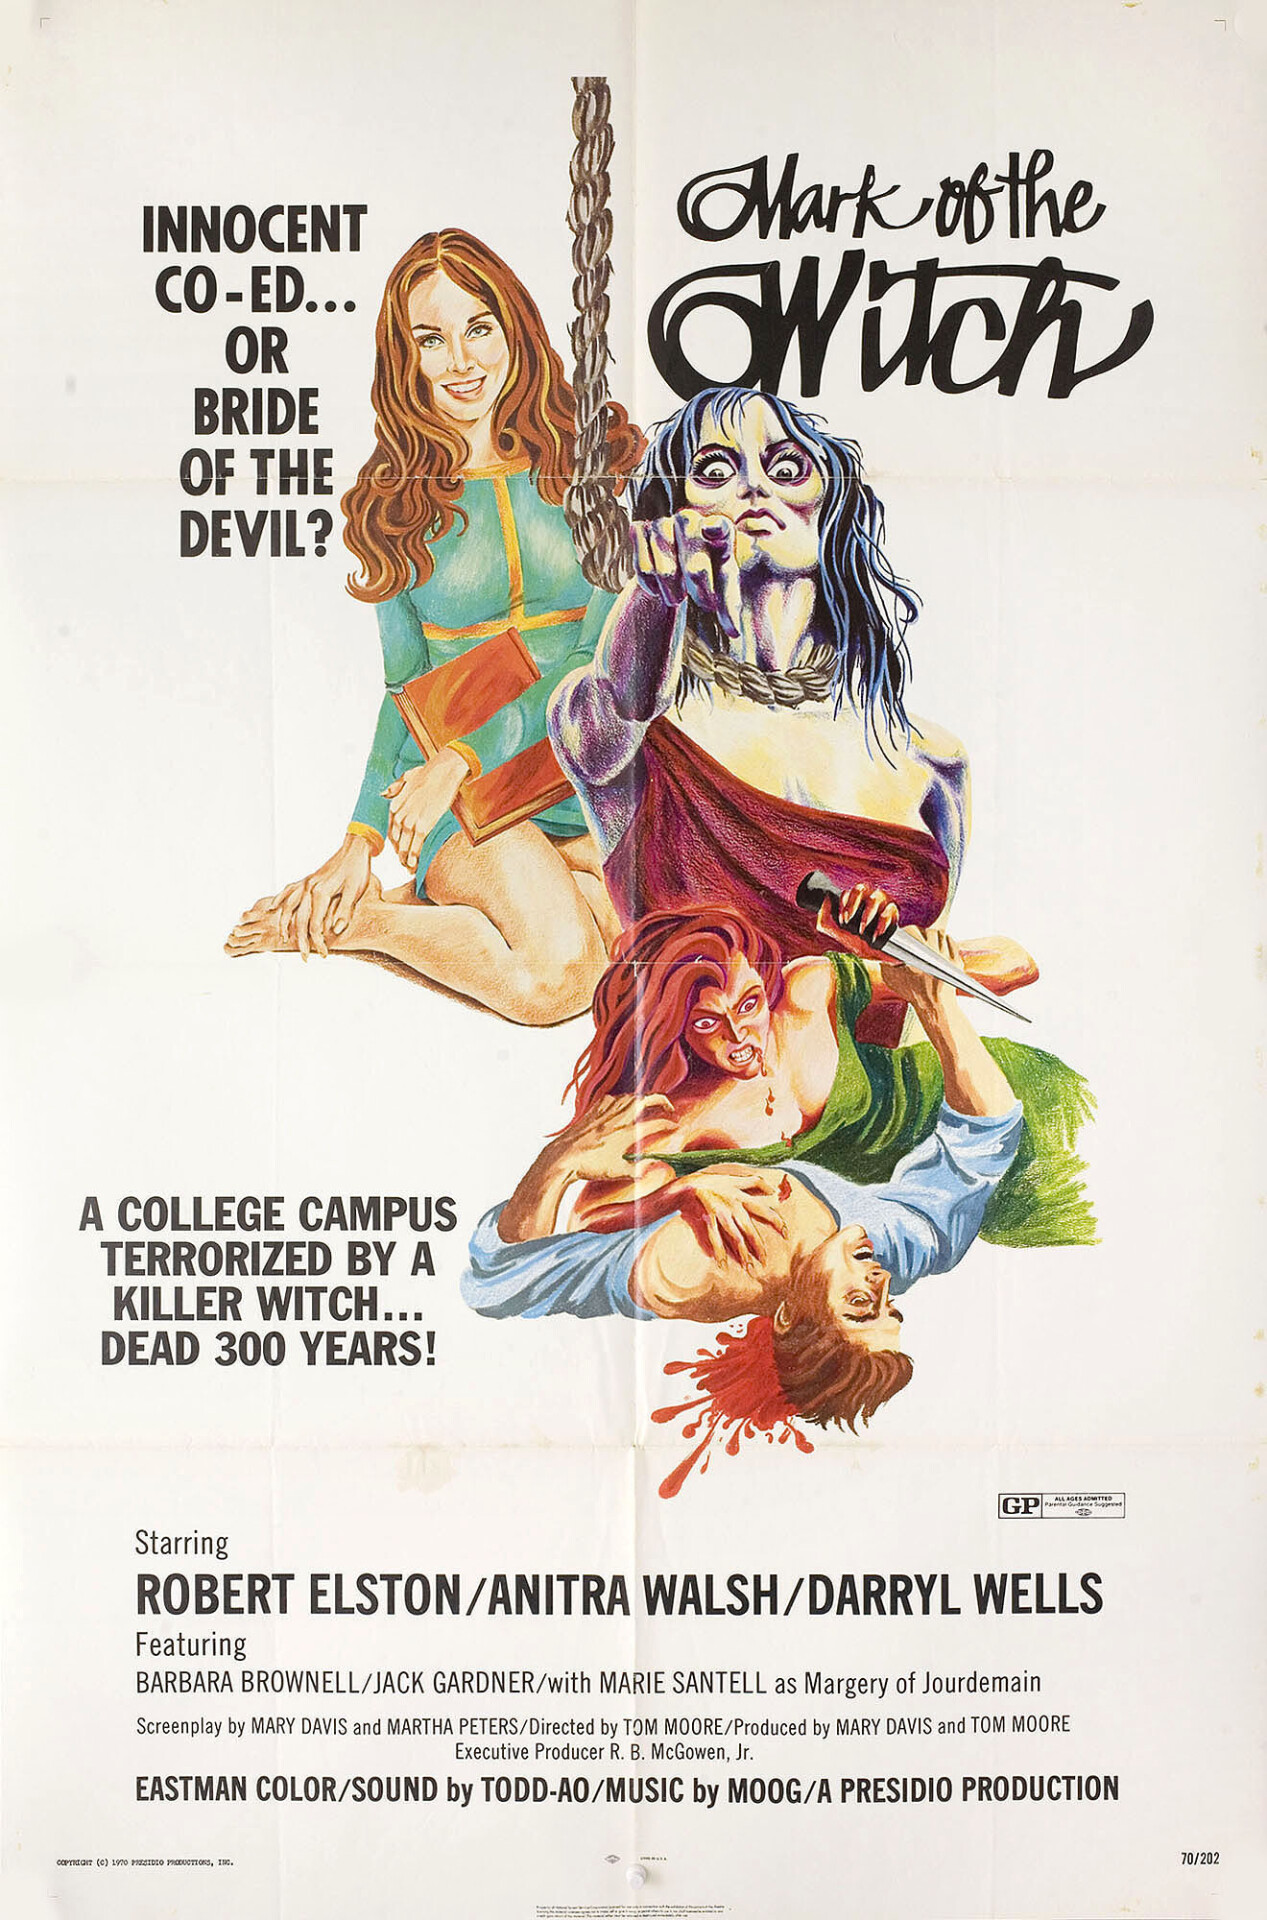 Отметина ведьмы (Mark of the Witch, 1970), режиссёр Том Мур, американский постер к фильму (ужасы, 1970 год)